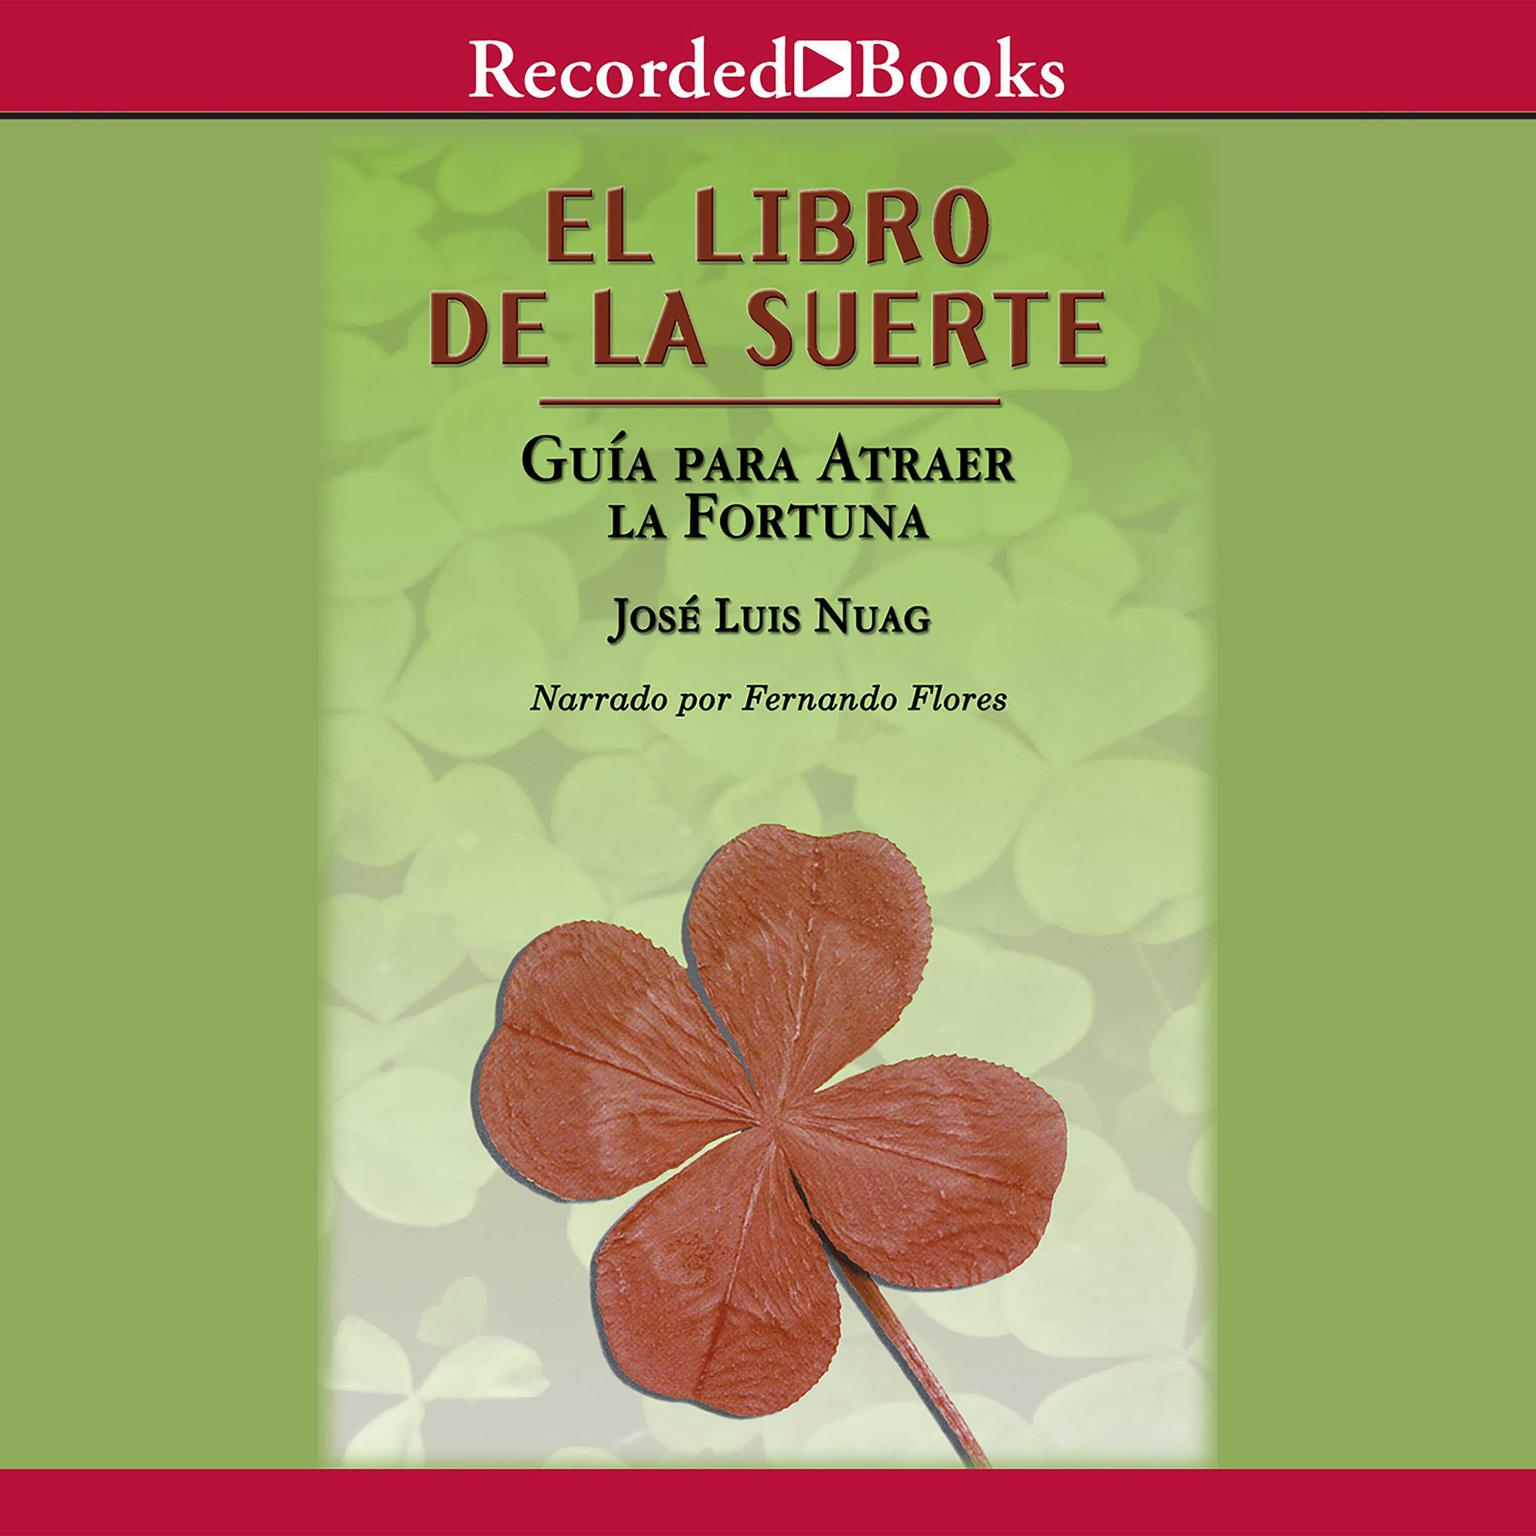 El libro de la suerte: Guia para atraer la fortuna: The Book of Fate: Guide to Attract Fortune Audiobook, by José Luis Nuag